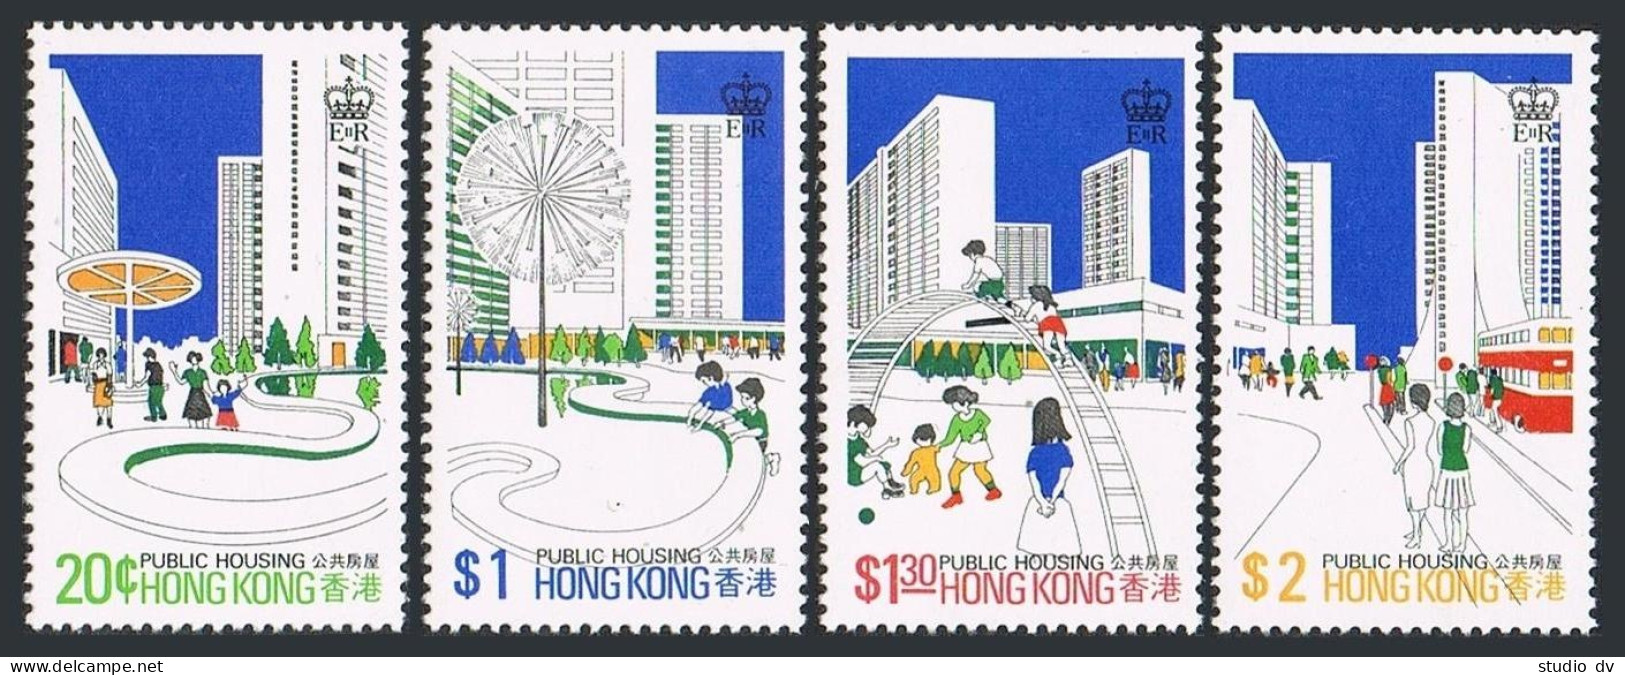 Hong Kong 376-379,379a, MNH. Mi 376-379,Bl.3. Public Housing Development, 1981. - Ongebruikt